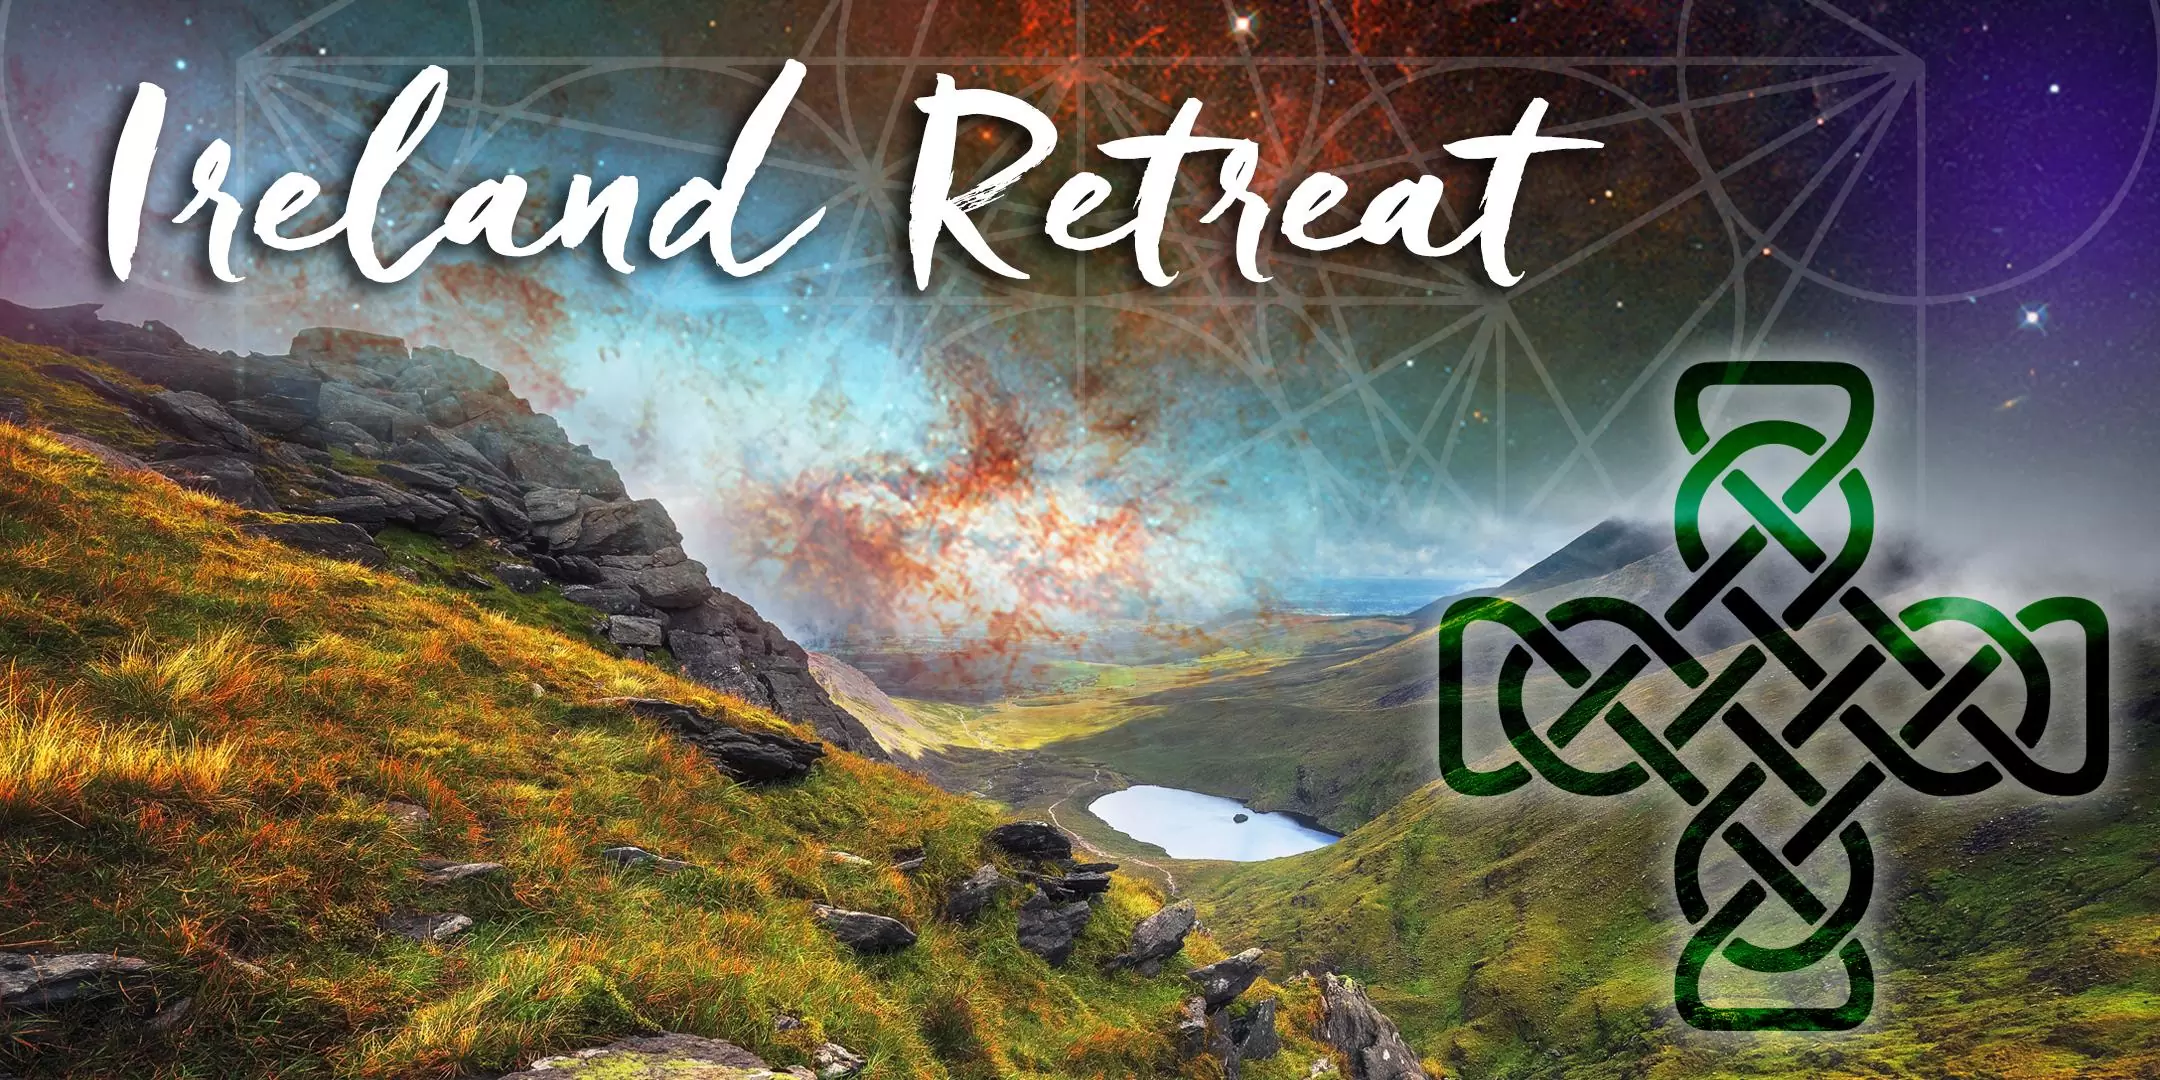 Ireland Retreat: 5D Abundance – Activating Divine Flow in Your Life